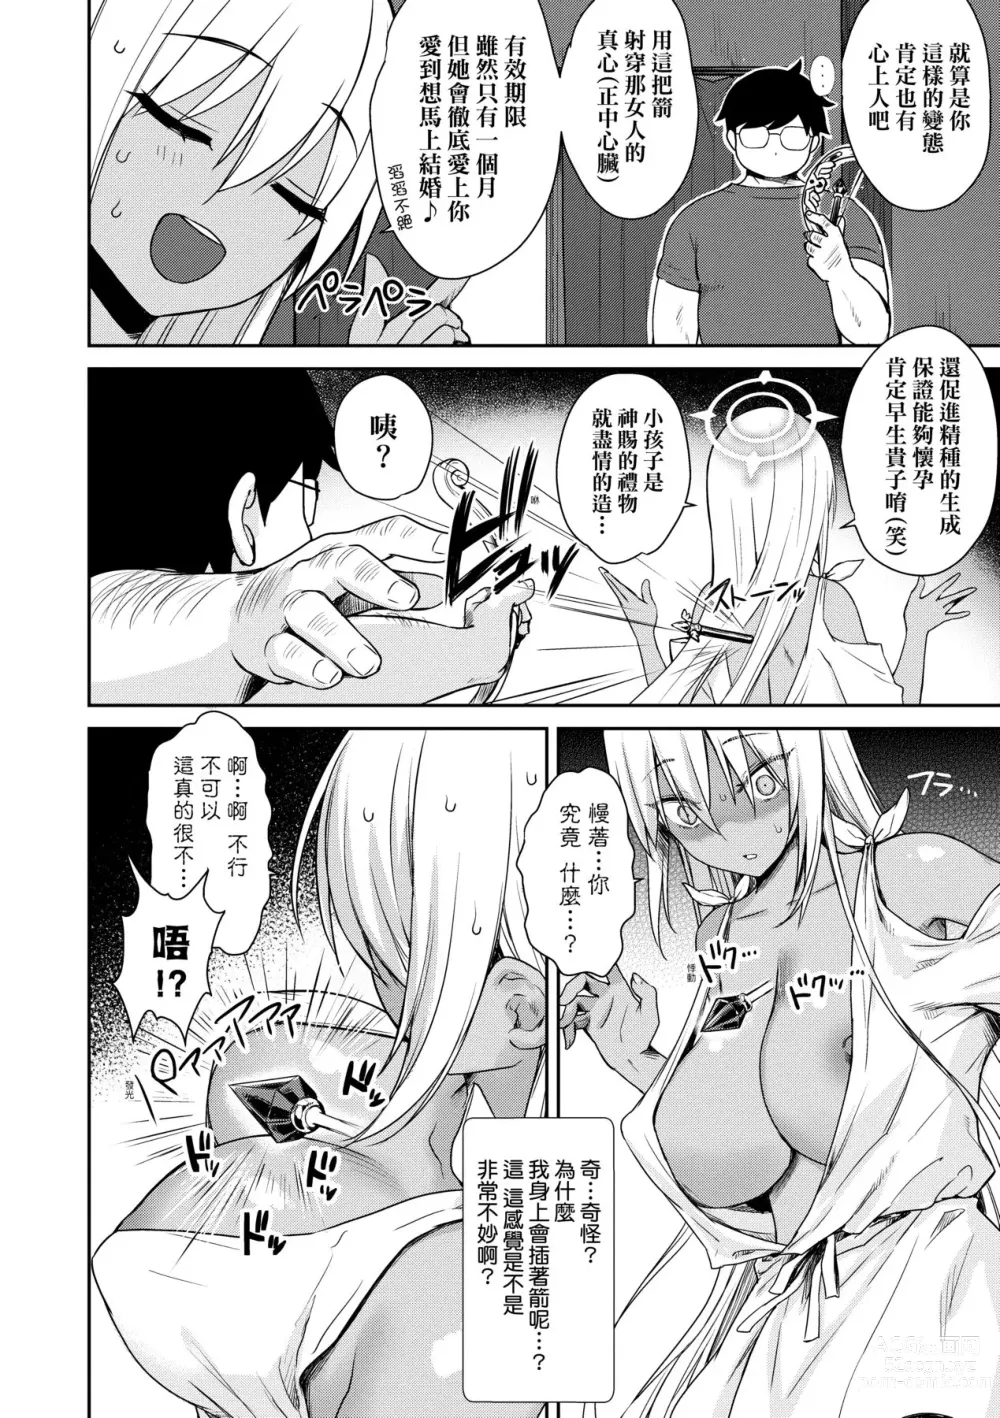 Page 185 of manga 鄰居家的傲嬌淫魔美眉 (decensored)